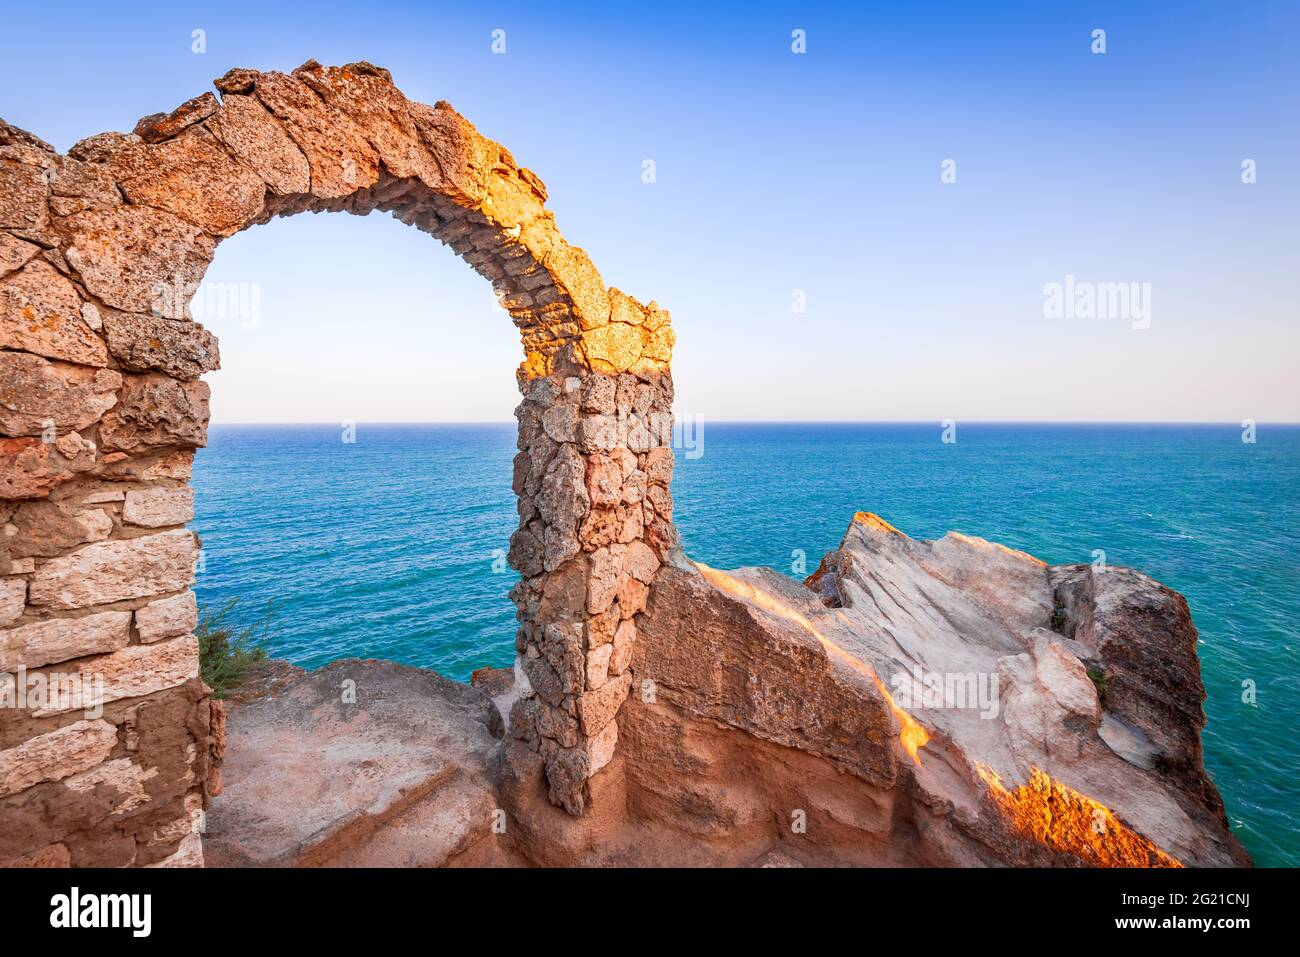 Forteresse de Kaliakra, Bulgarie. Ruines médiévales sur le Cap Kaliakra, Mer Noire, Bulgarie Banque D'Images